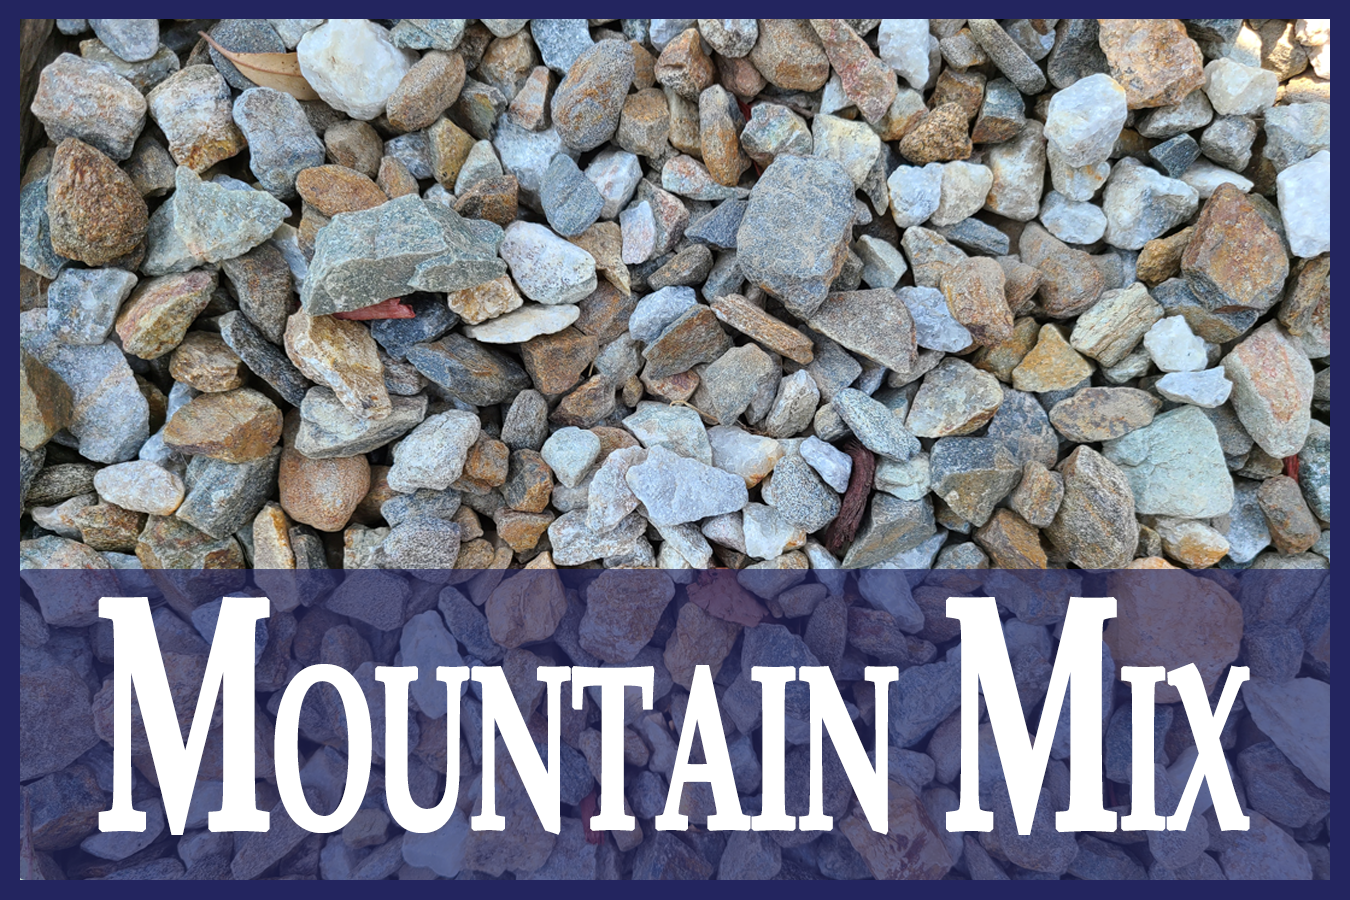 Mountain Mix